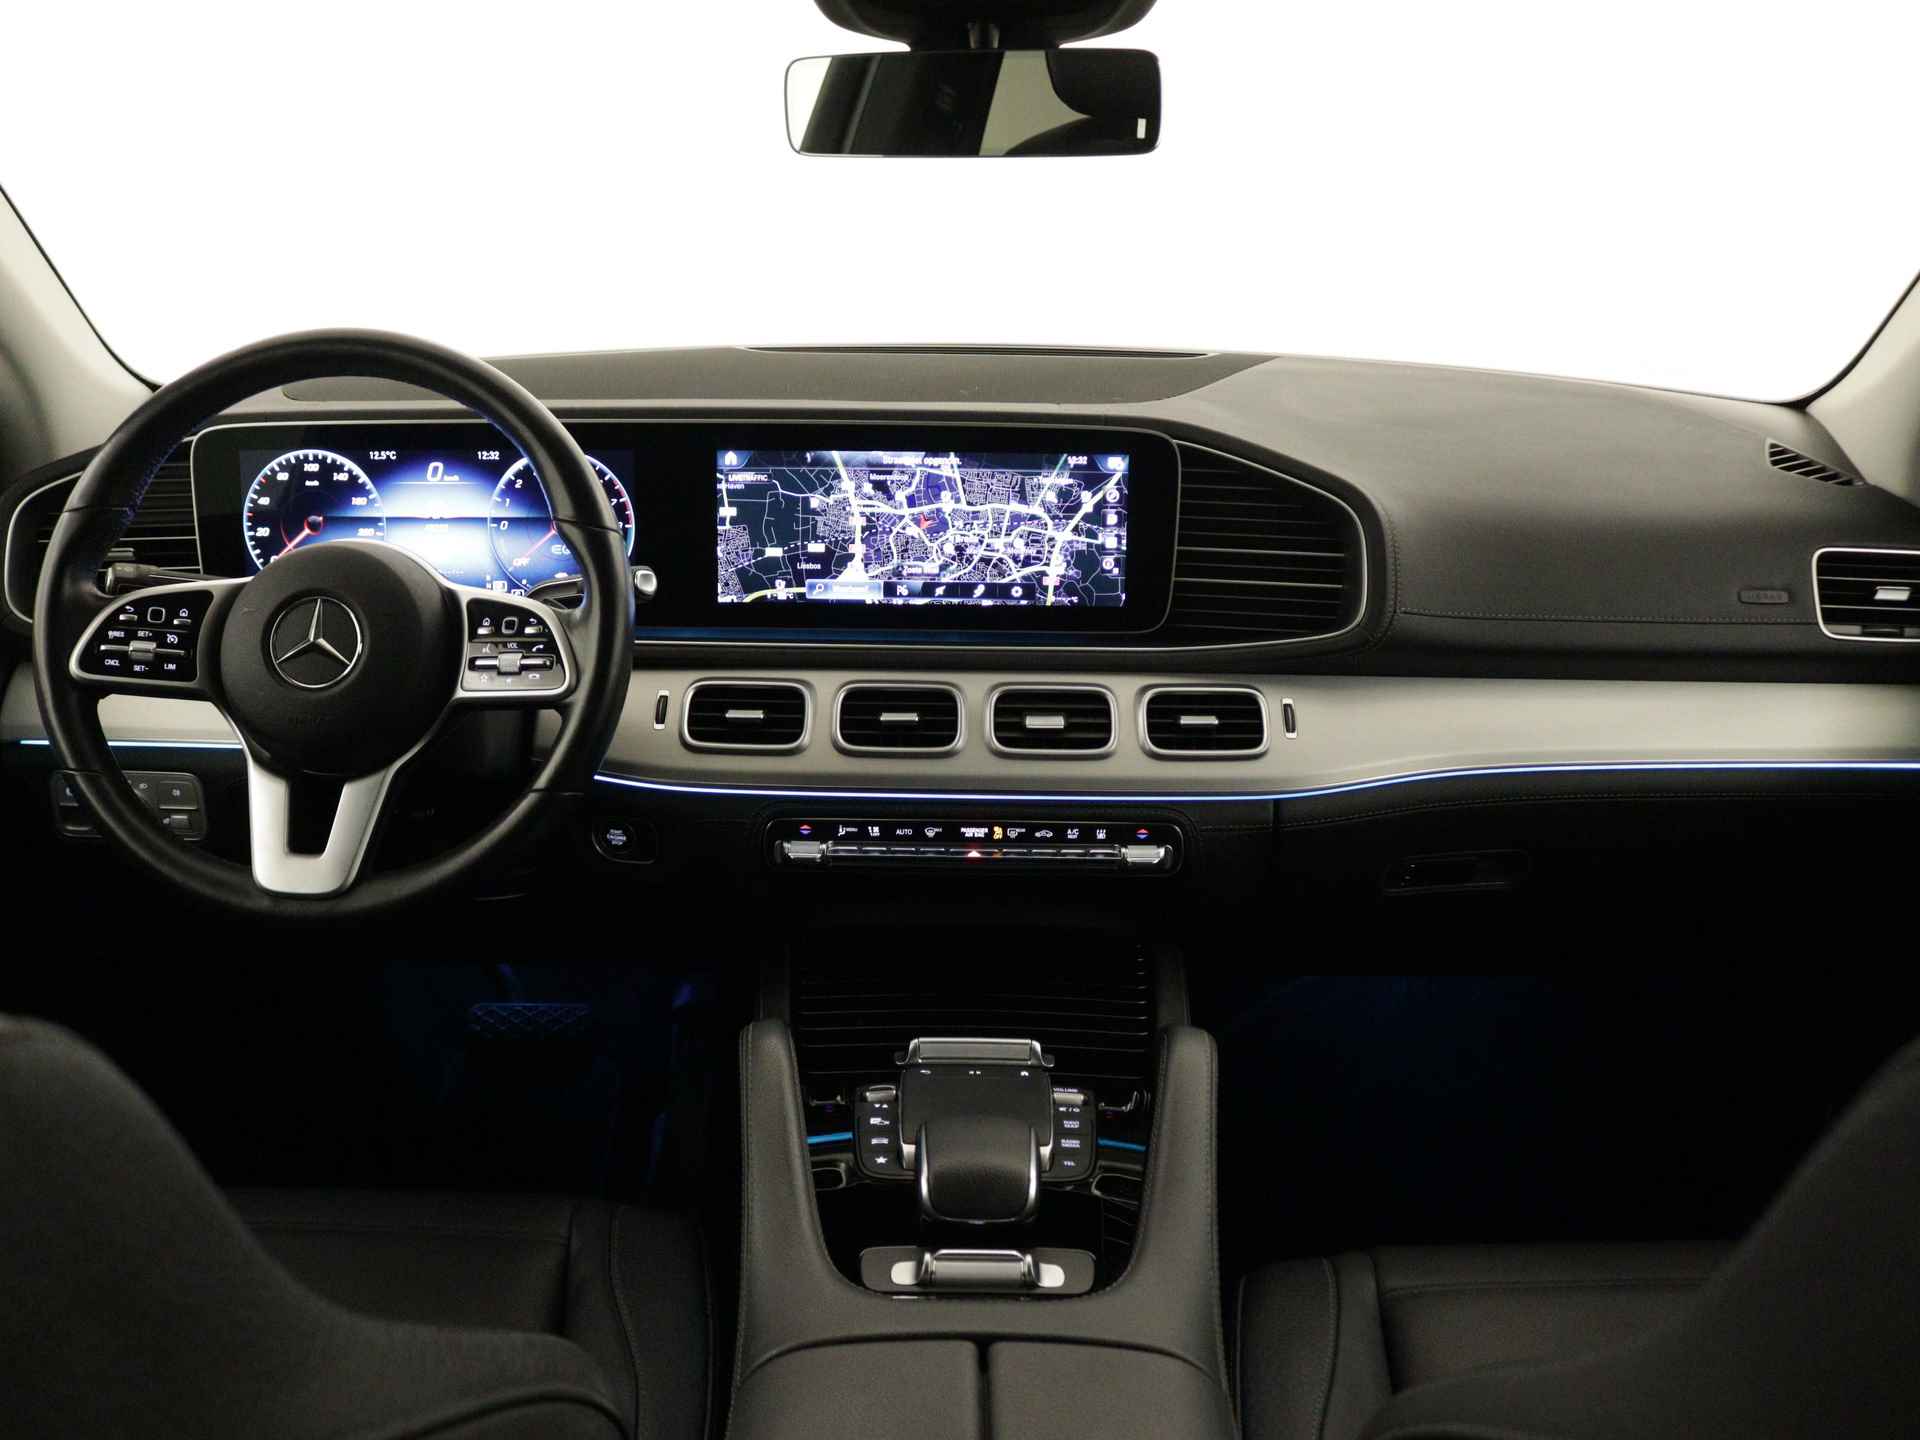 Mercedes-Benz GLE 350 e 4-MATIC AMG Nightpakket Limited 5 spaaks lichtmetalen velgen | Trekhaak | Airmatic | Treeplanken | Alarm klasse 3 |  Augmented Reality | sfeerverlichting | DAB | Parking support | inclusief 24 maanden MB Certified garantie voor europa - 6/45